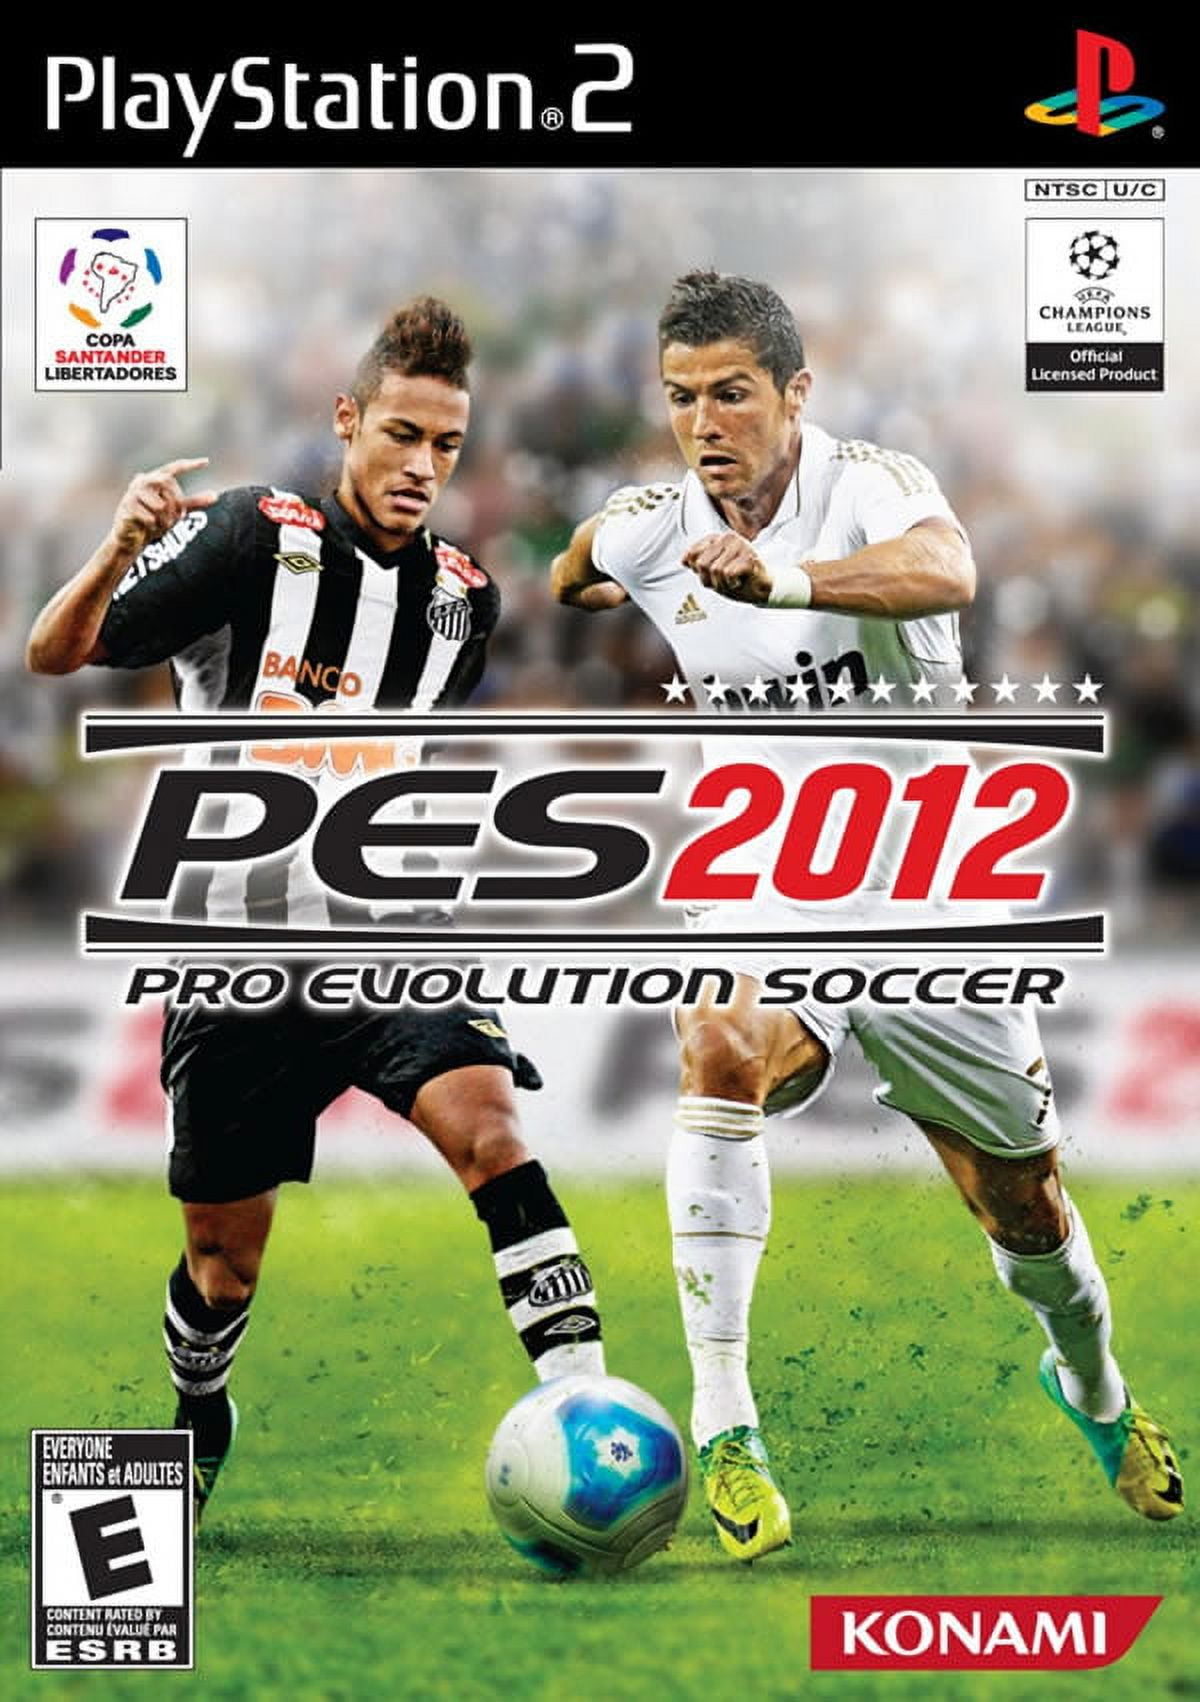 PES 2012 PES-1Malaysia.com Mod V2.0 - Pro Evolution Soccer 2012 at  ModdingWay